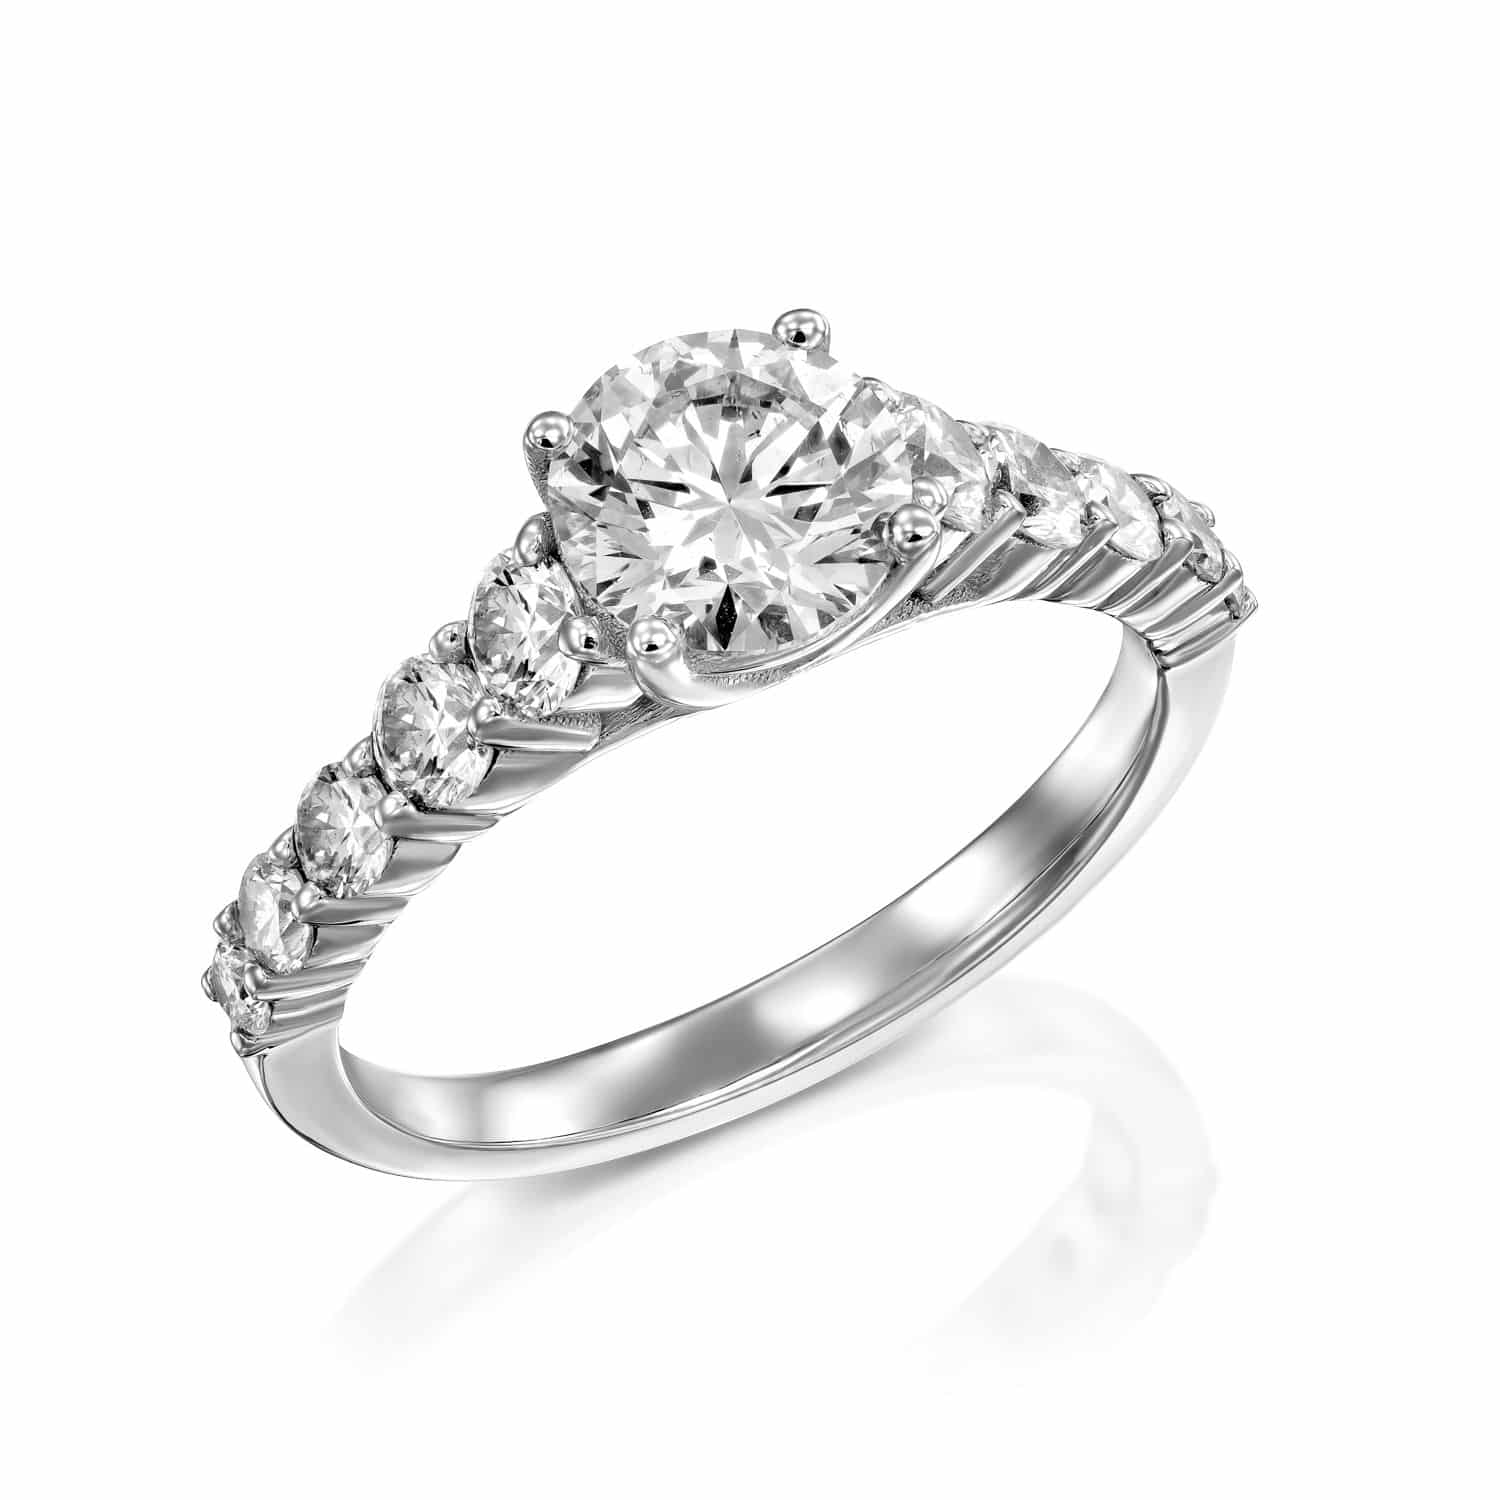 טבעת אירוסין אלגנטית מכסף, מריאנה, המציגה יהלום מרכזי גדול ולצידו יהלומים קטנים יותר המשובצים בלהקה, משדרים יוקרה ויופי נצחי.